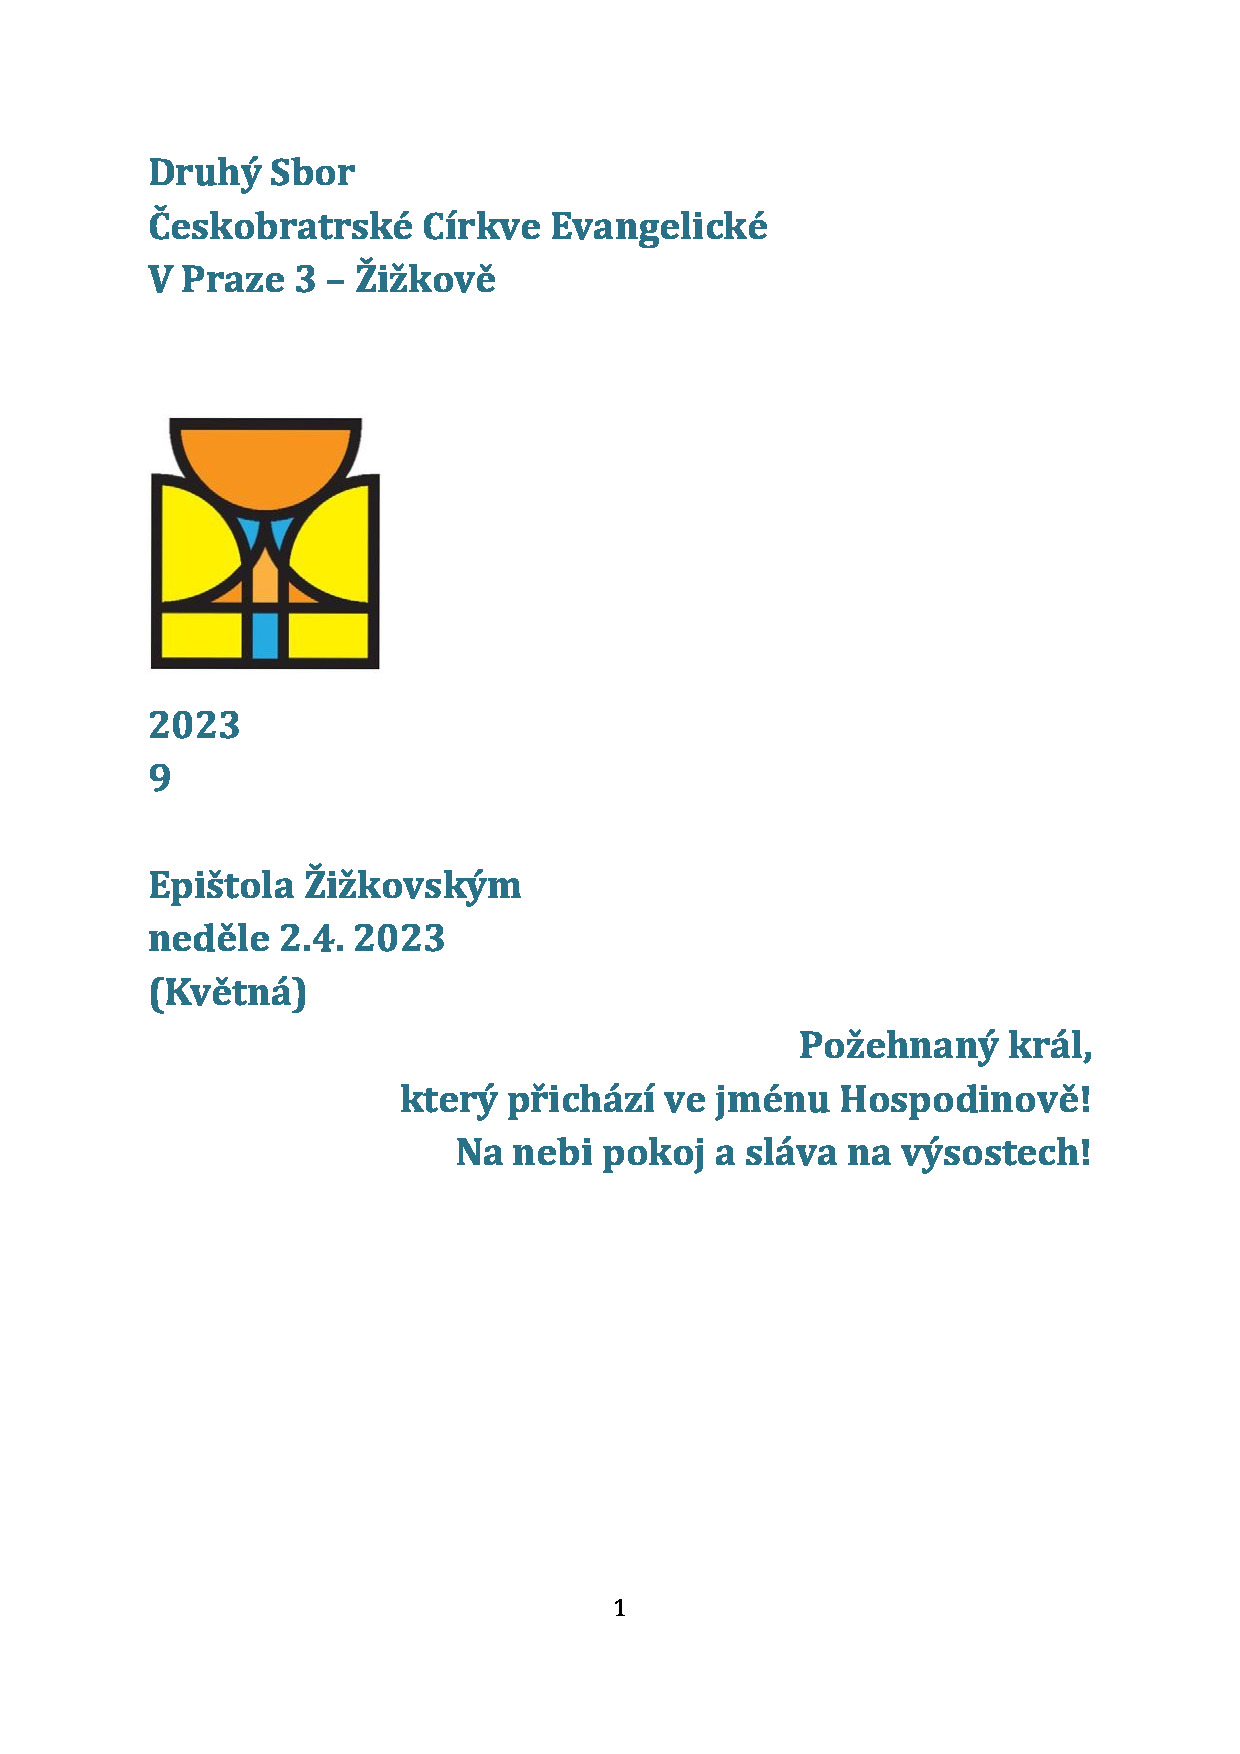 Epištola Žižkovským (9)